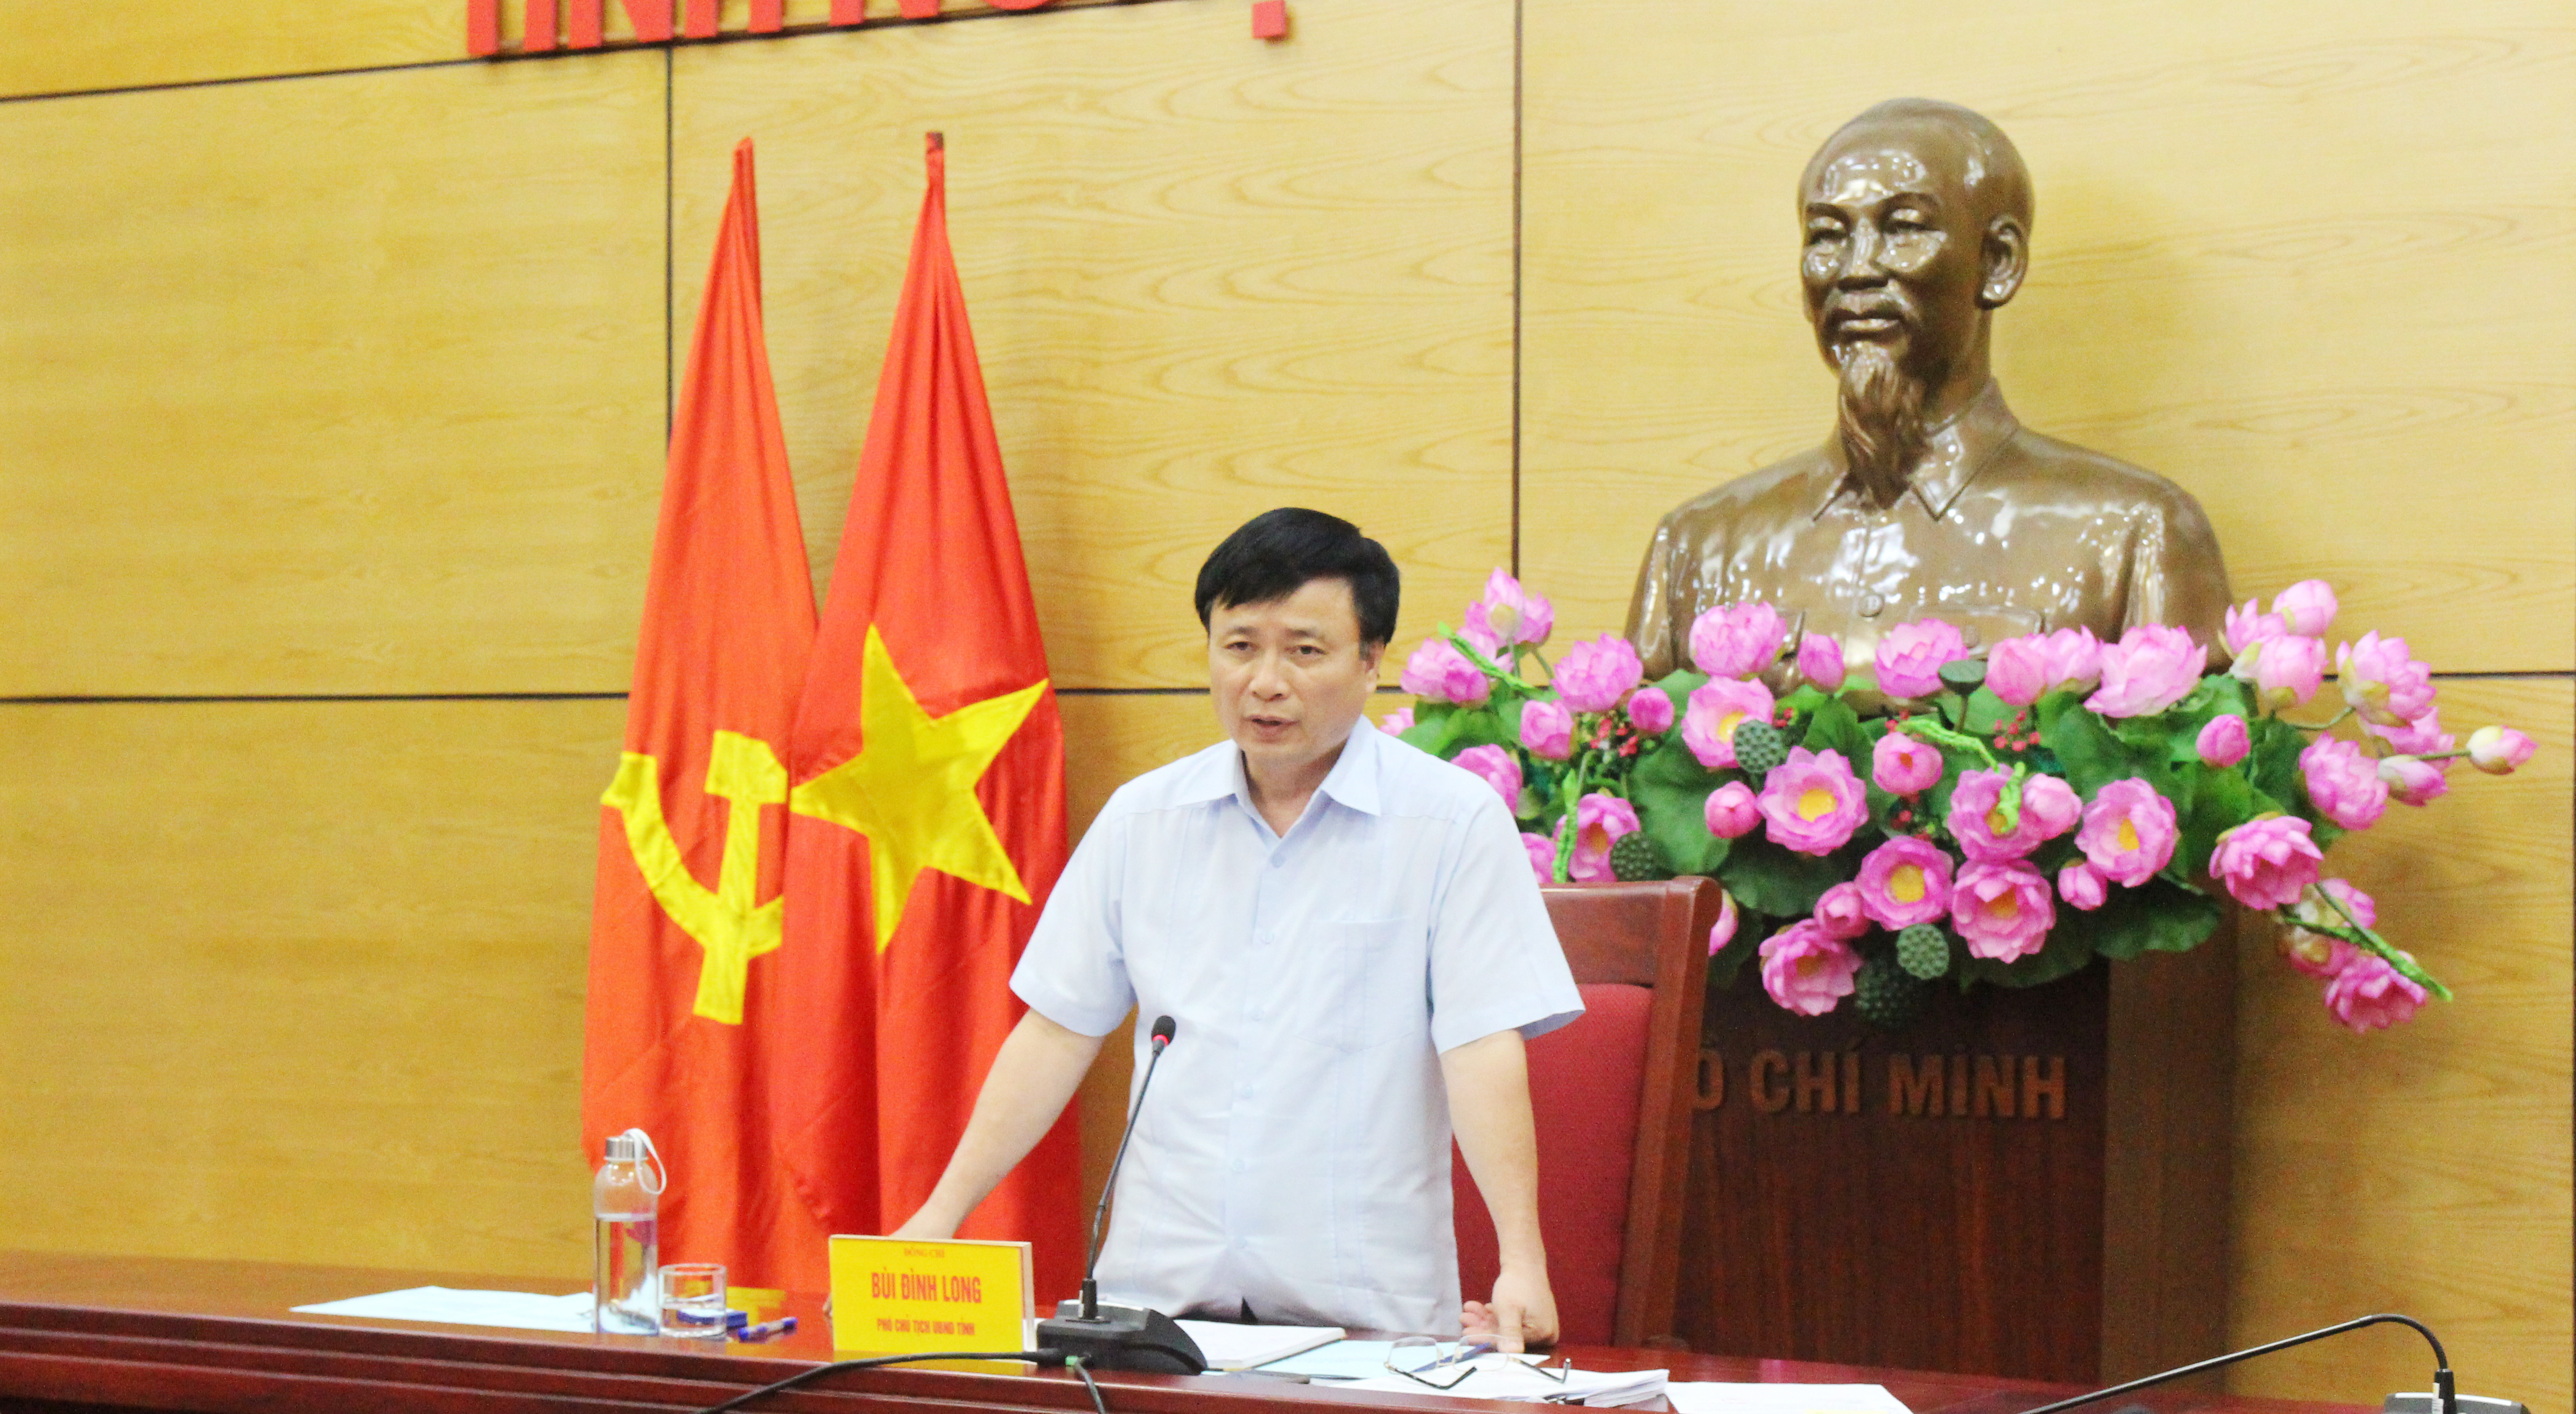 Đồng chí Bùi Đình Long kết luận việc thông qua các nghị quyết. 